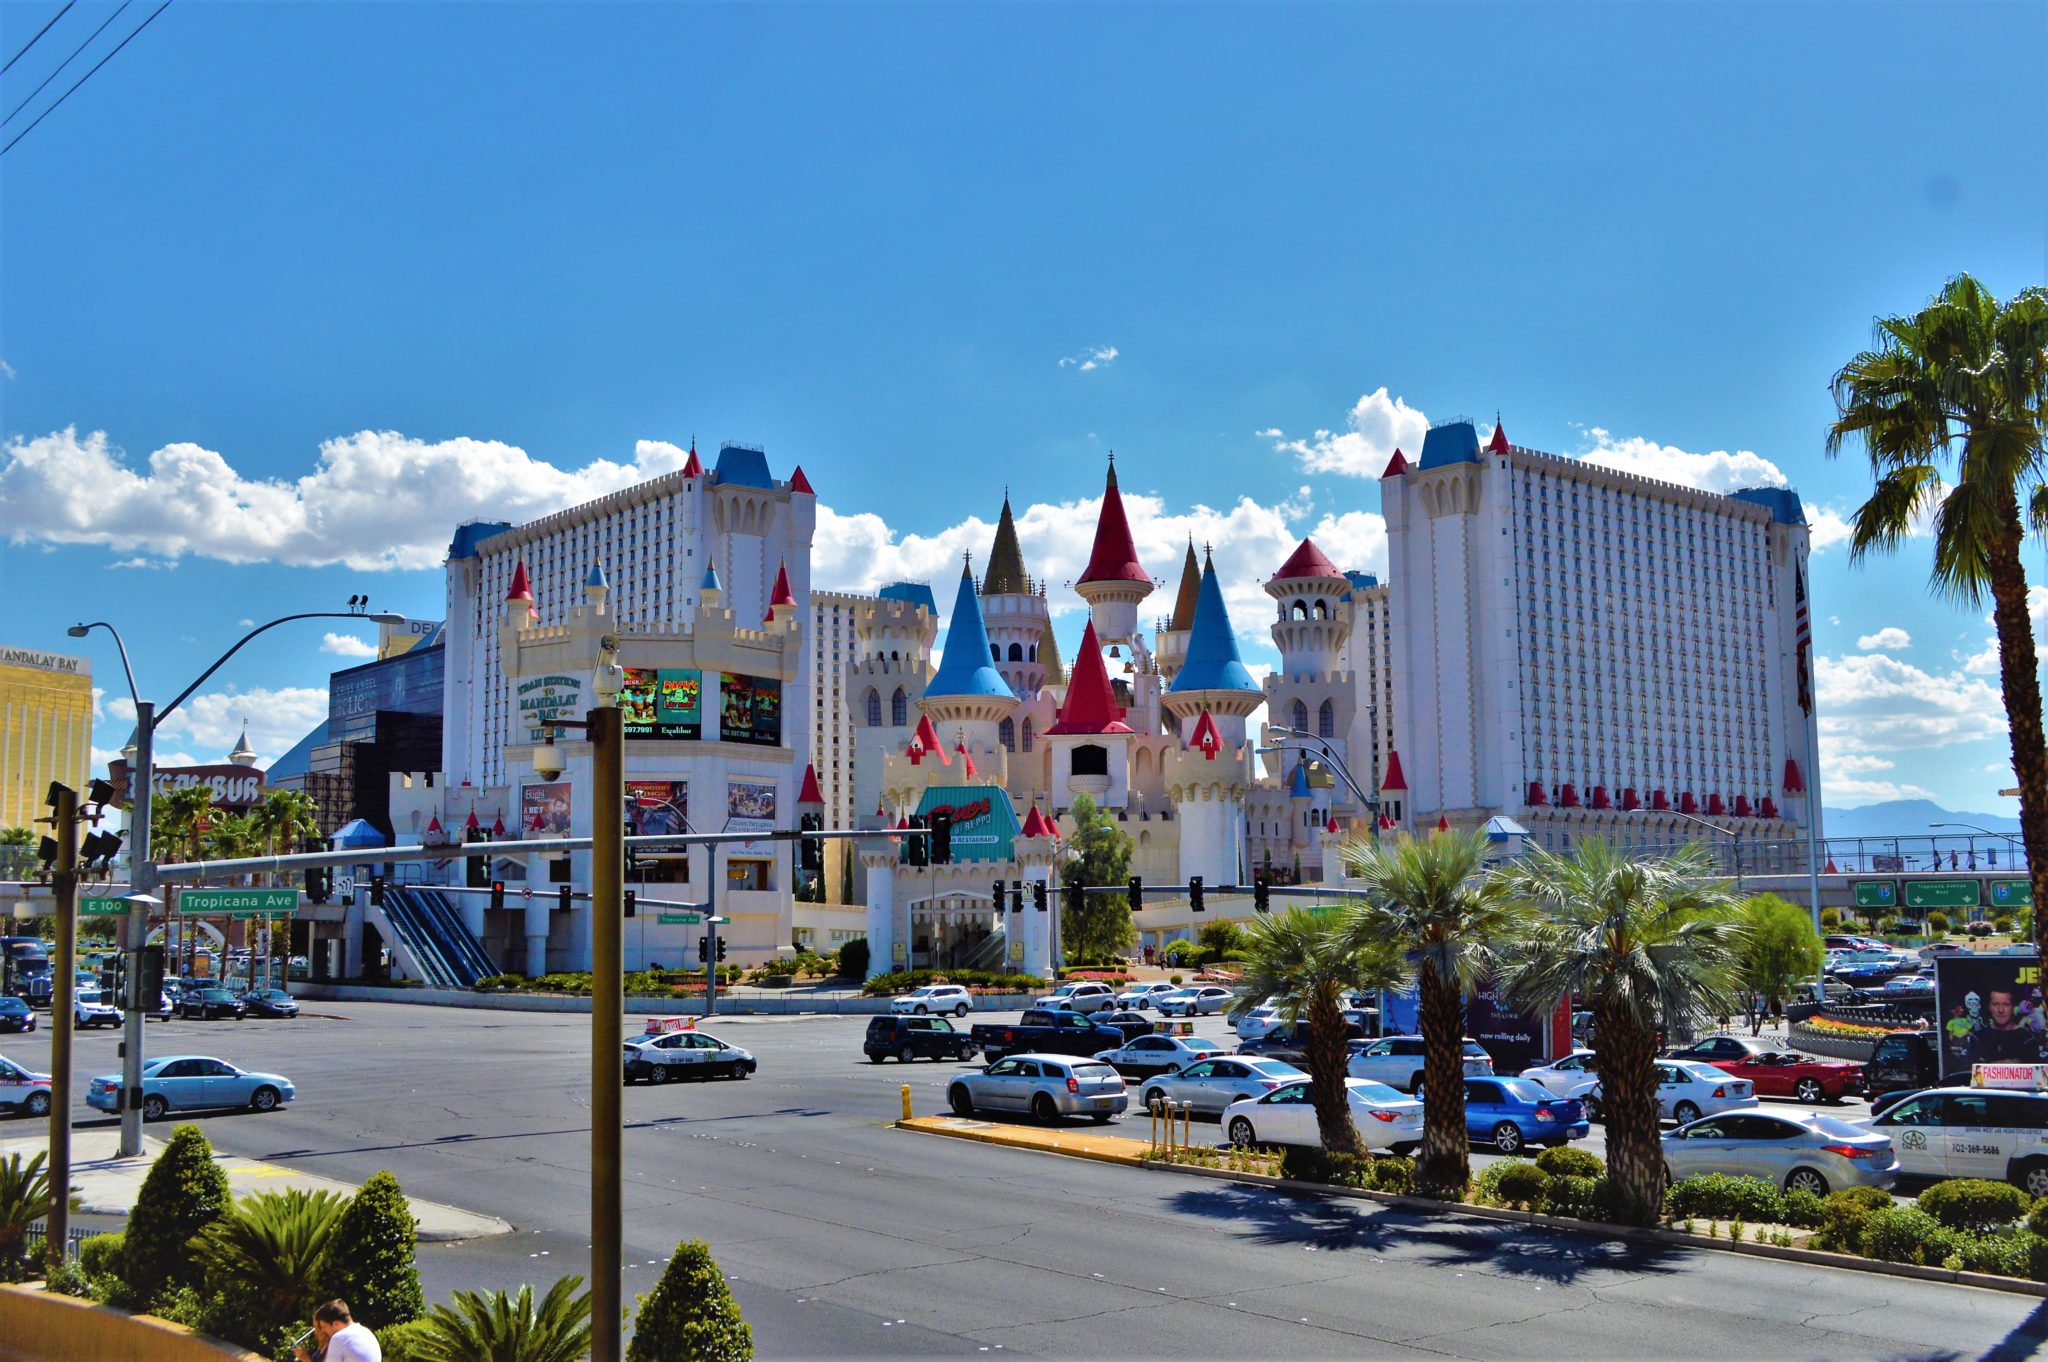 excalibur hotel casino las vegas nv